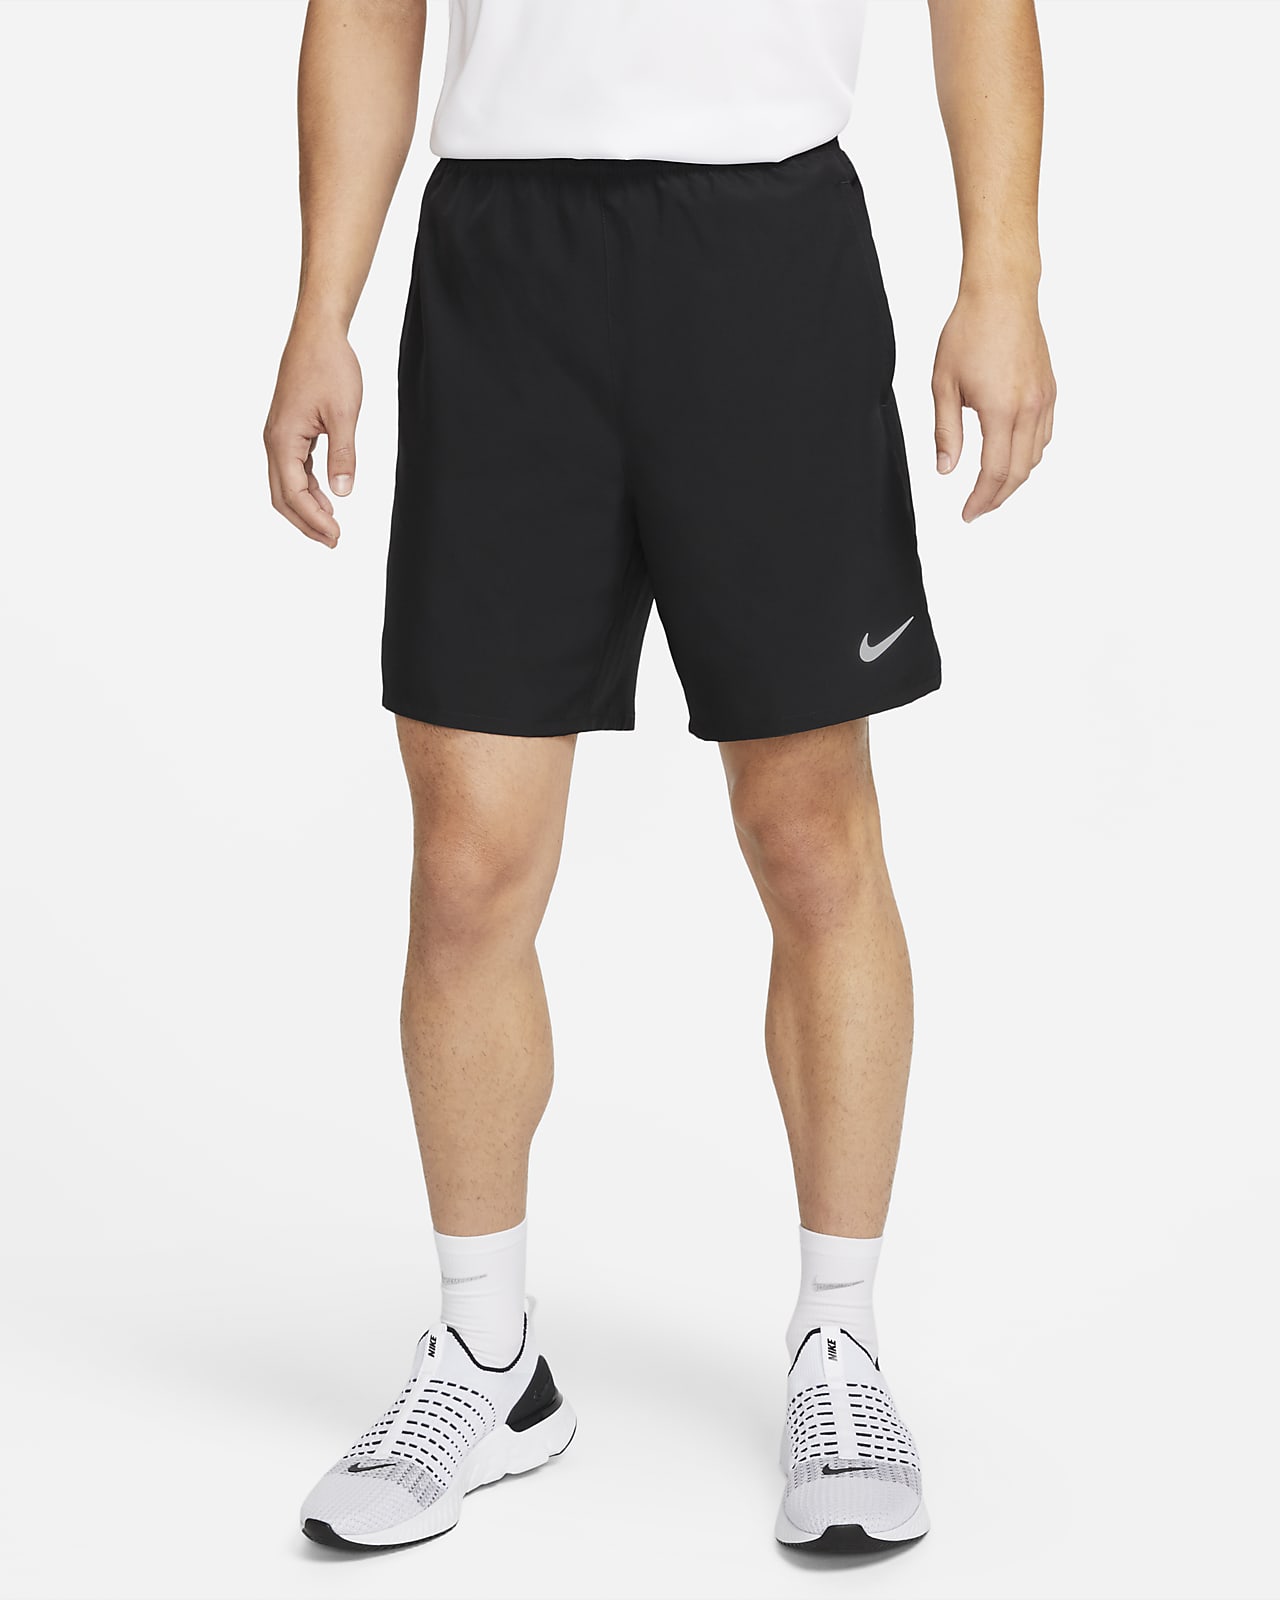 Nike Dri-FIT Challenger Men's 7 Unlined Versatile Shorts